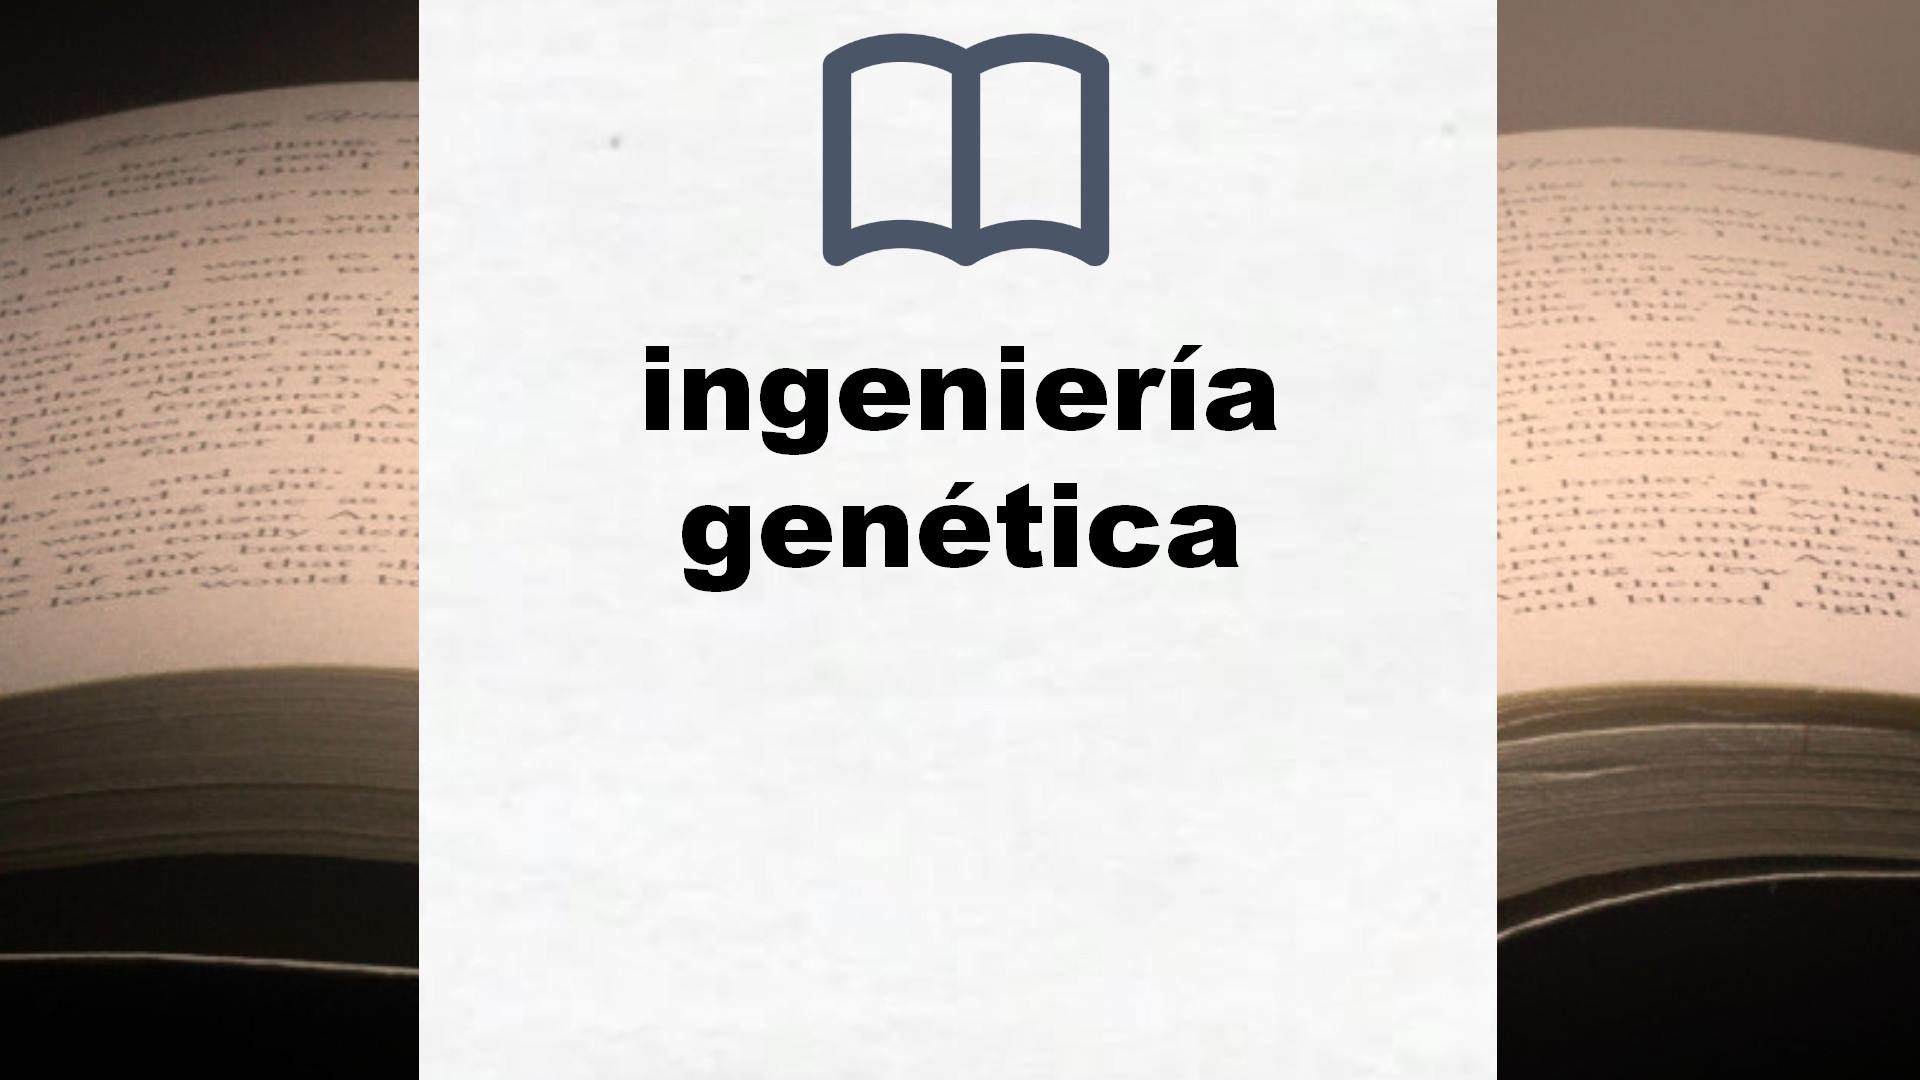 Libros sobre ingeniería genética